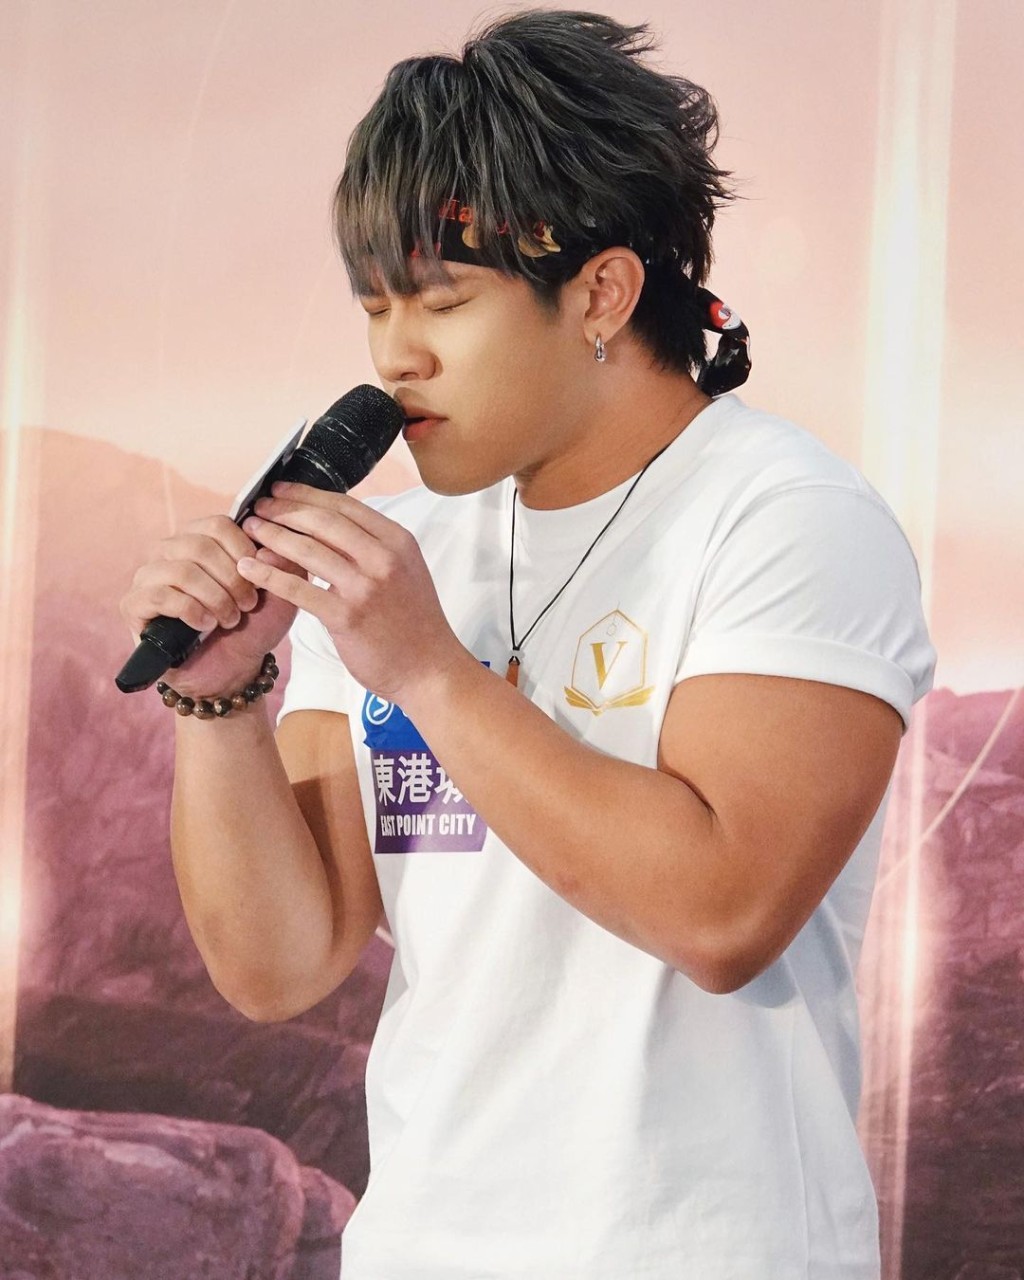 陈镇亨出席活动时献唱获好评。